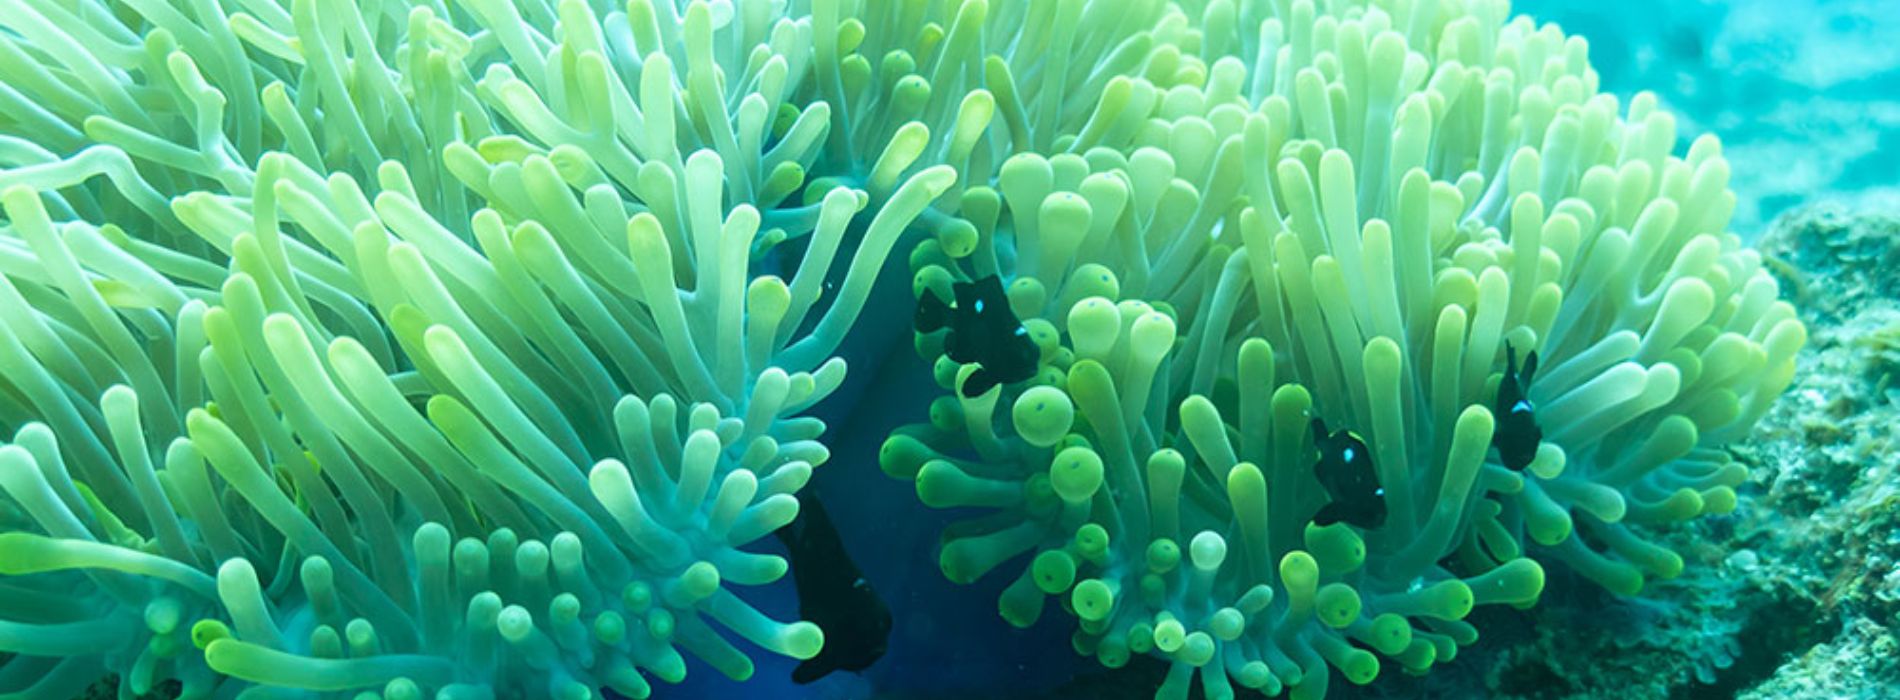 sea-anemones-overview